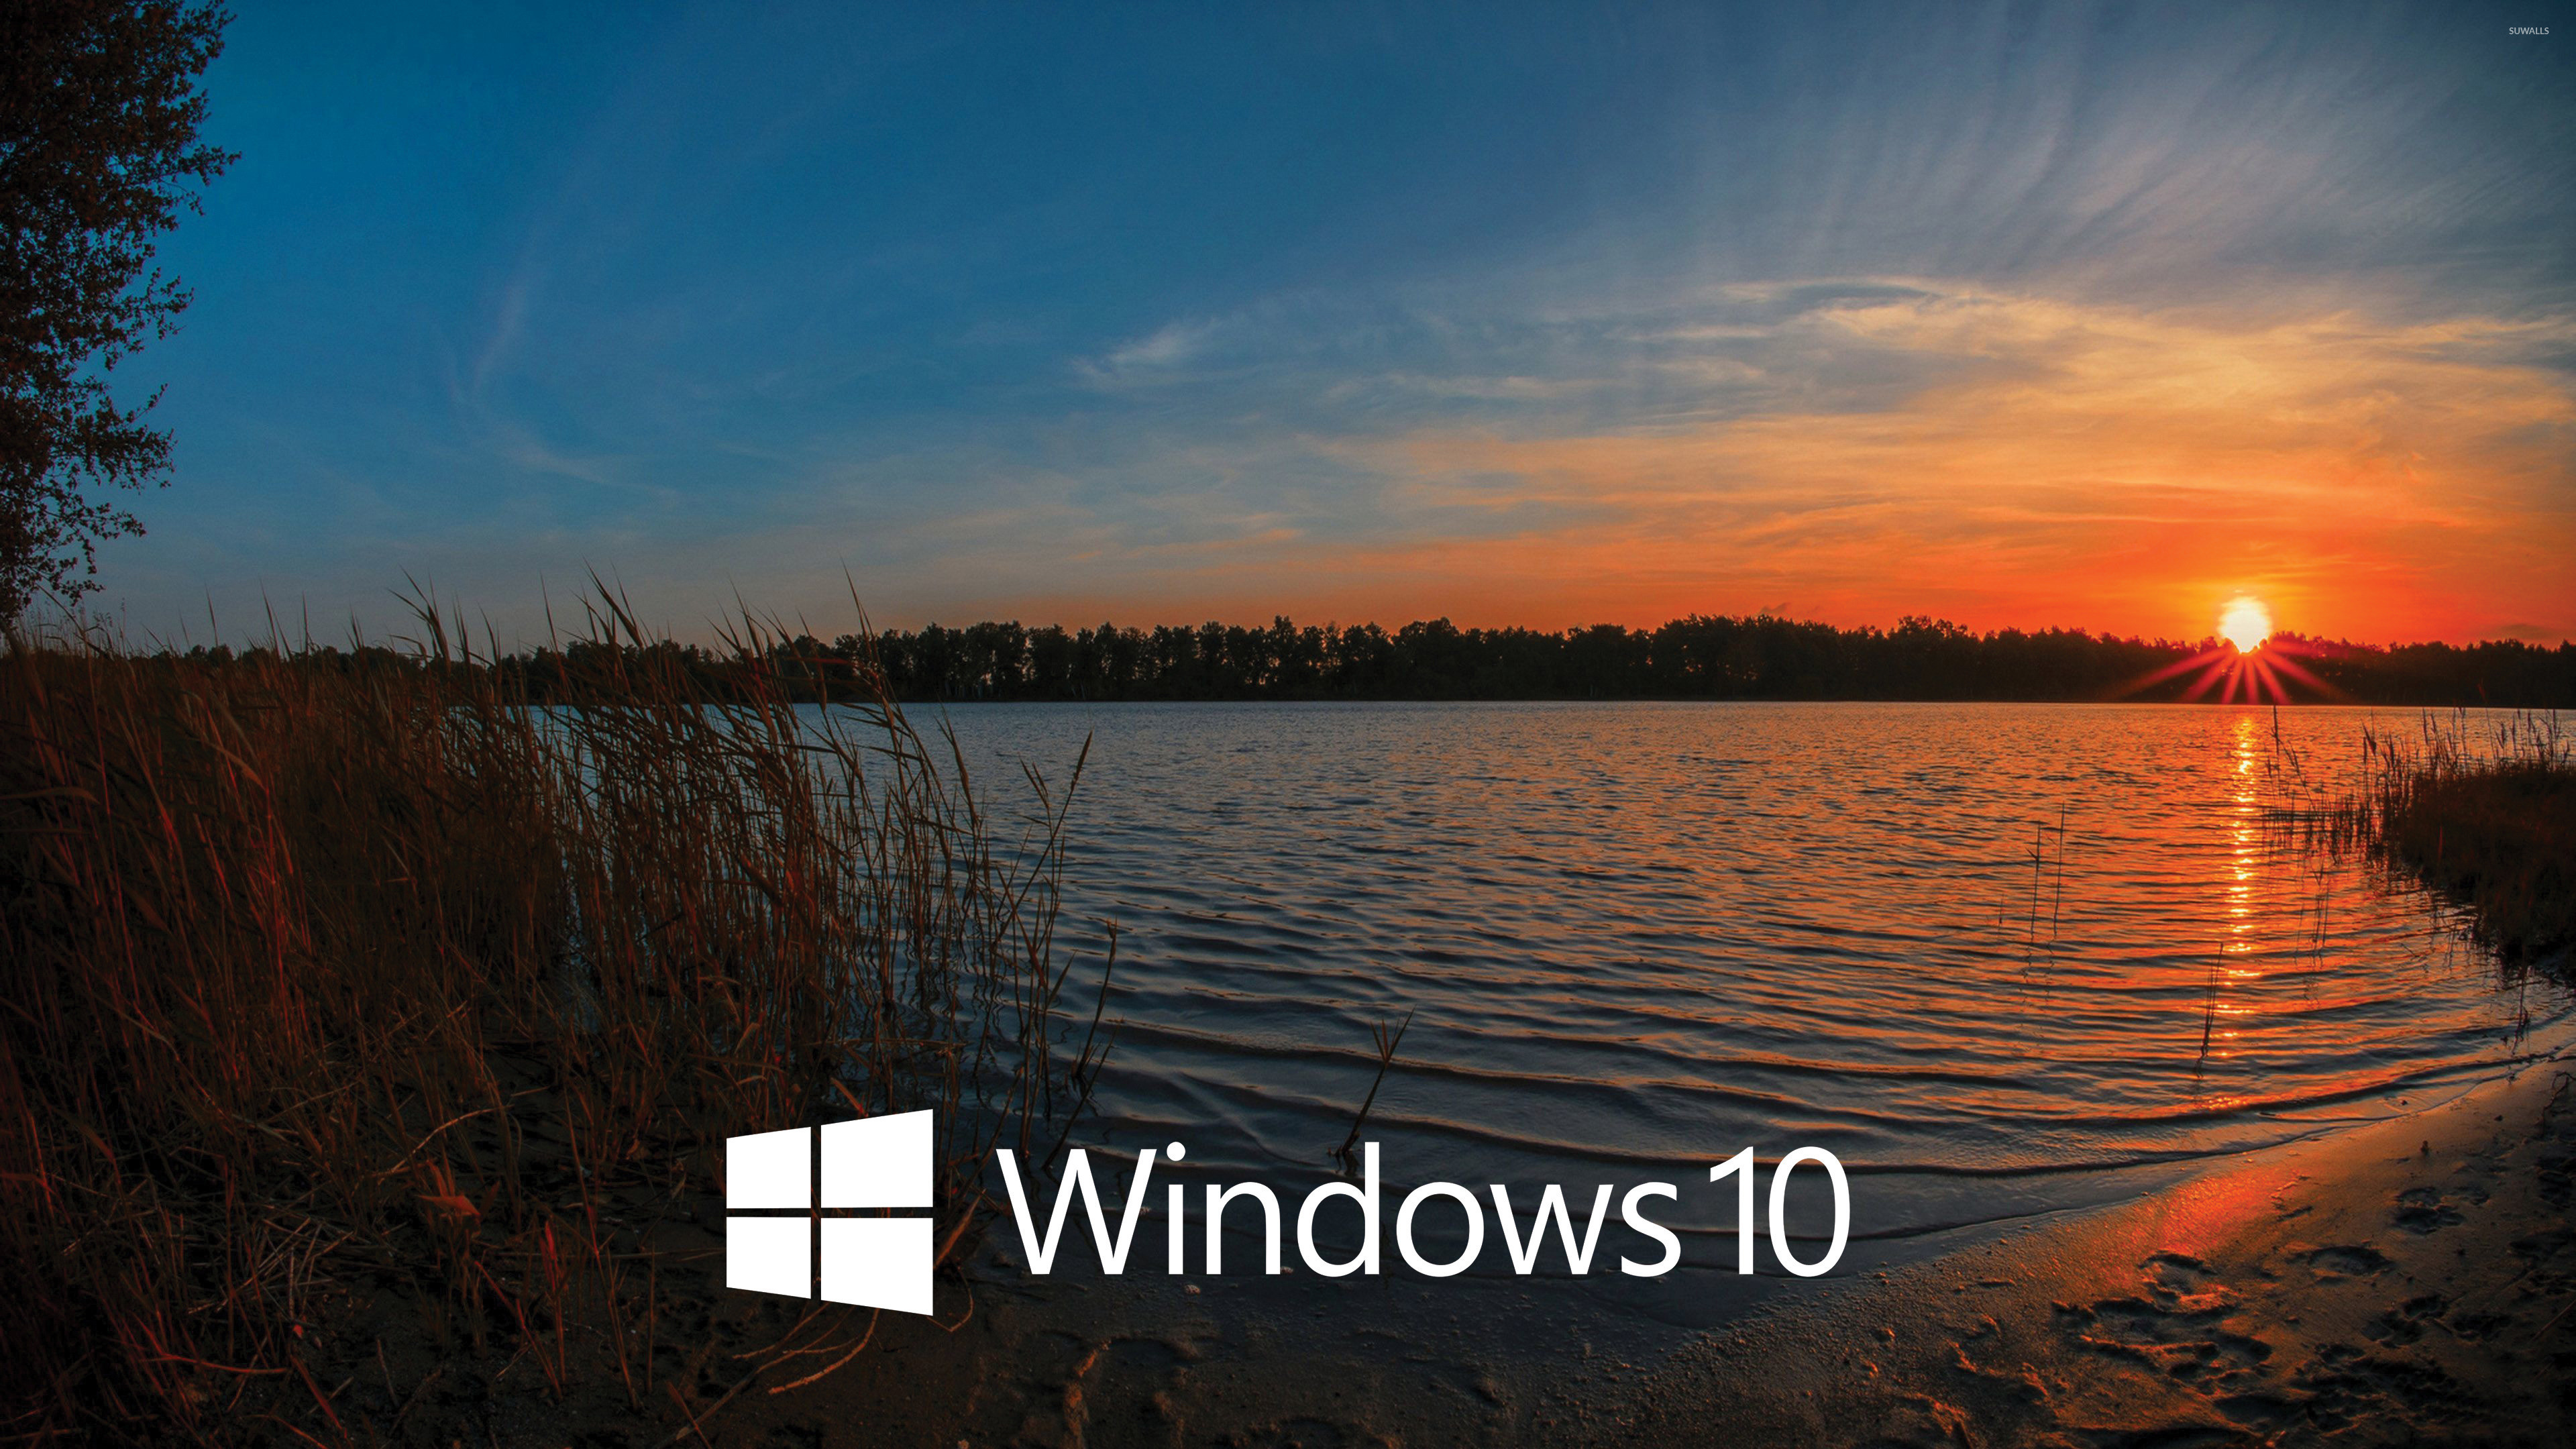 3840x2160 Windows 10 white text logo in the sunset wallpaper  jpg